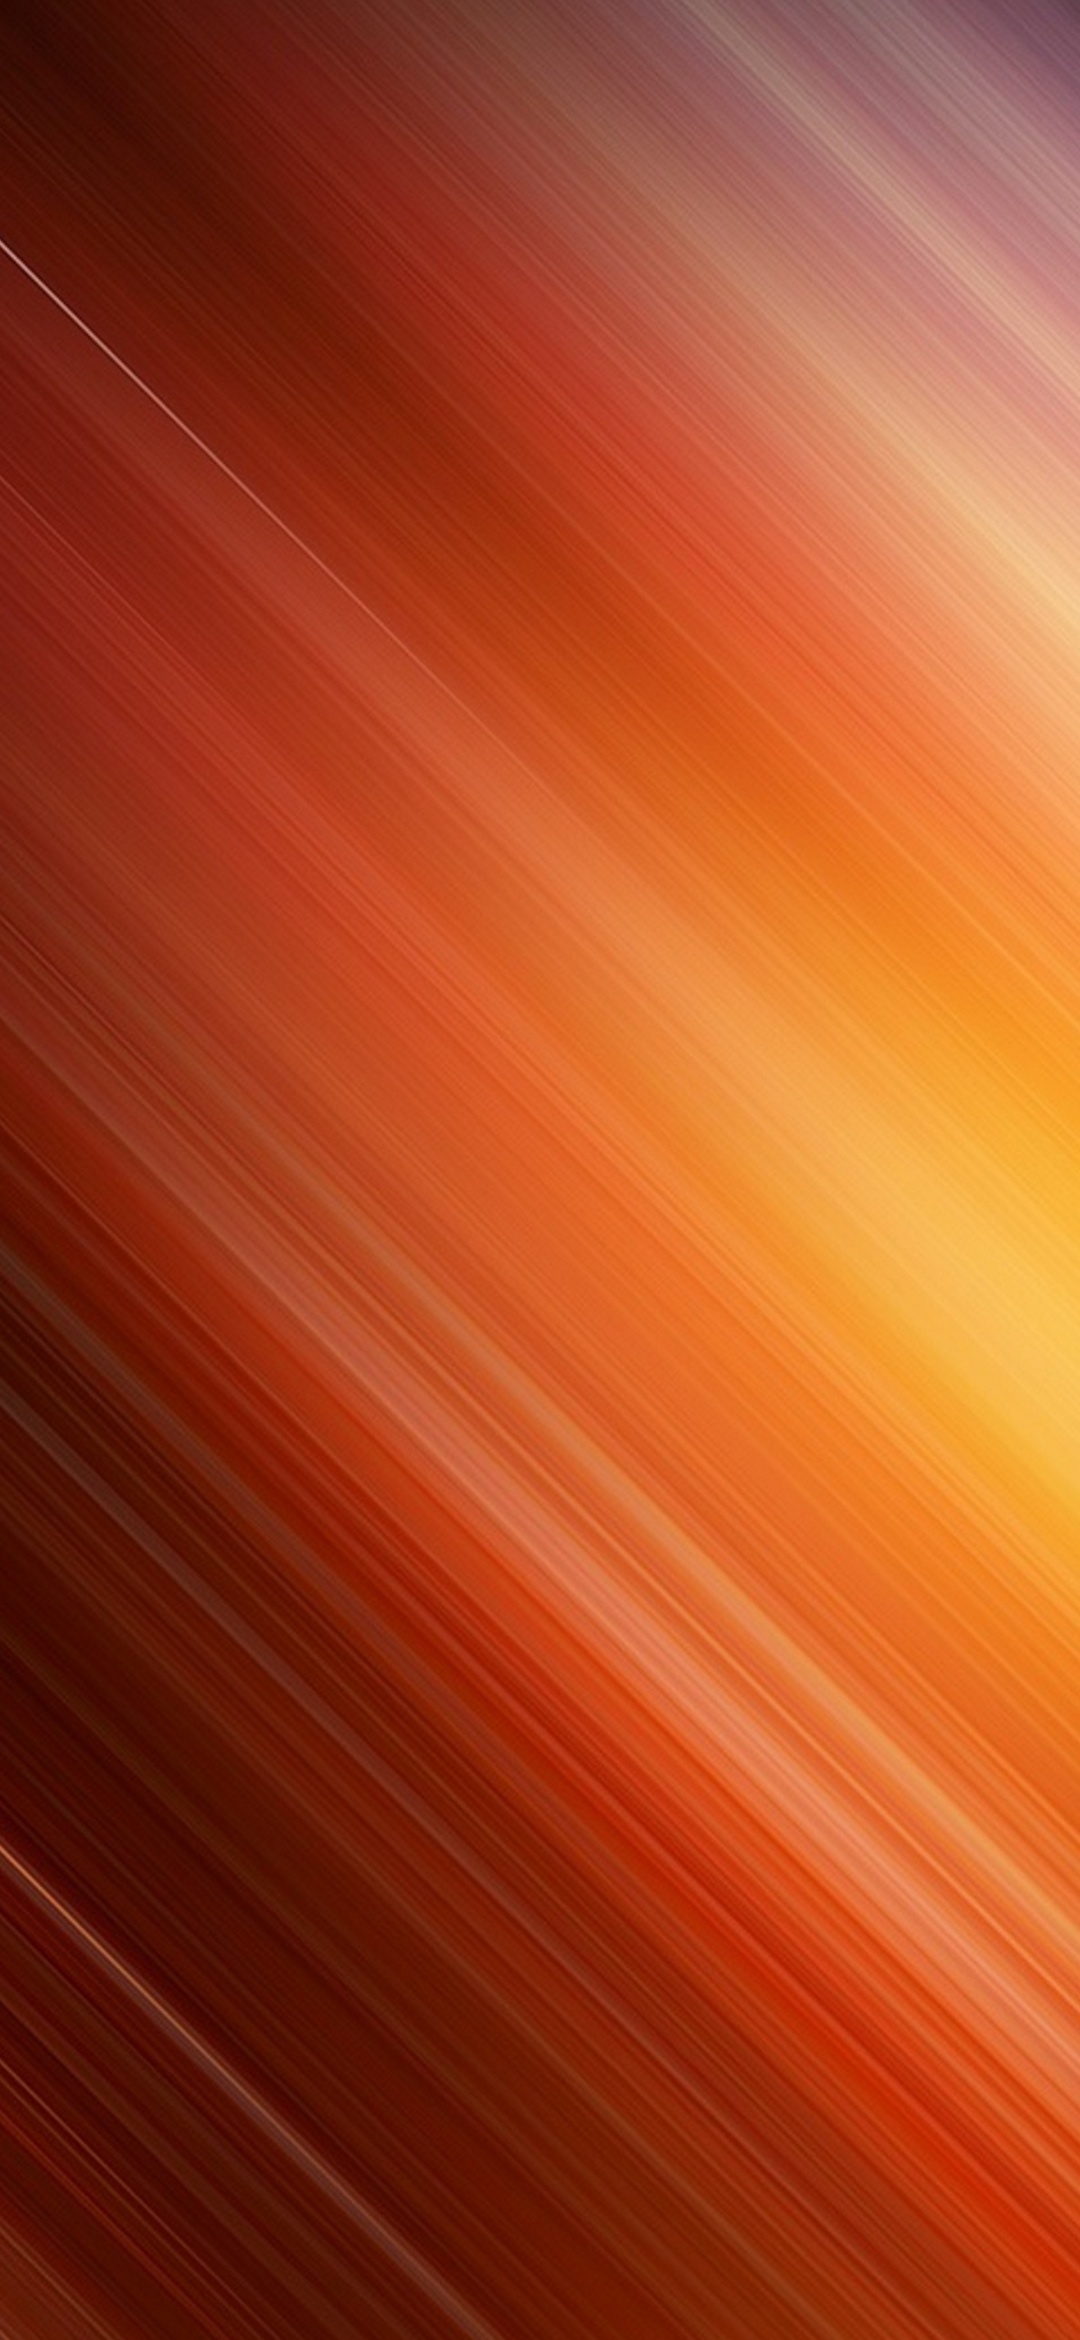 Beautiful Orange Diagonal Line Redmagic 5 Android 壁紙 待ち受け Sumaran